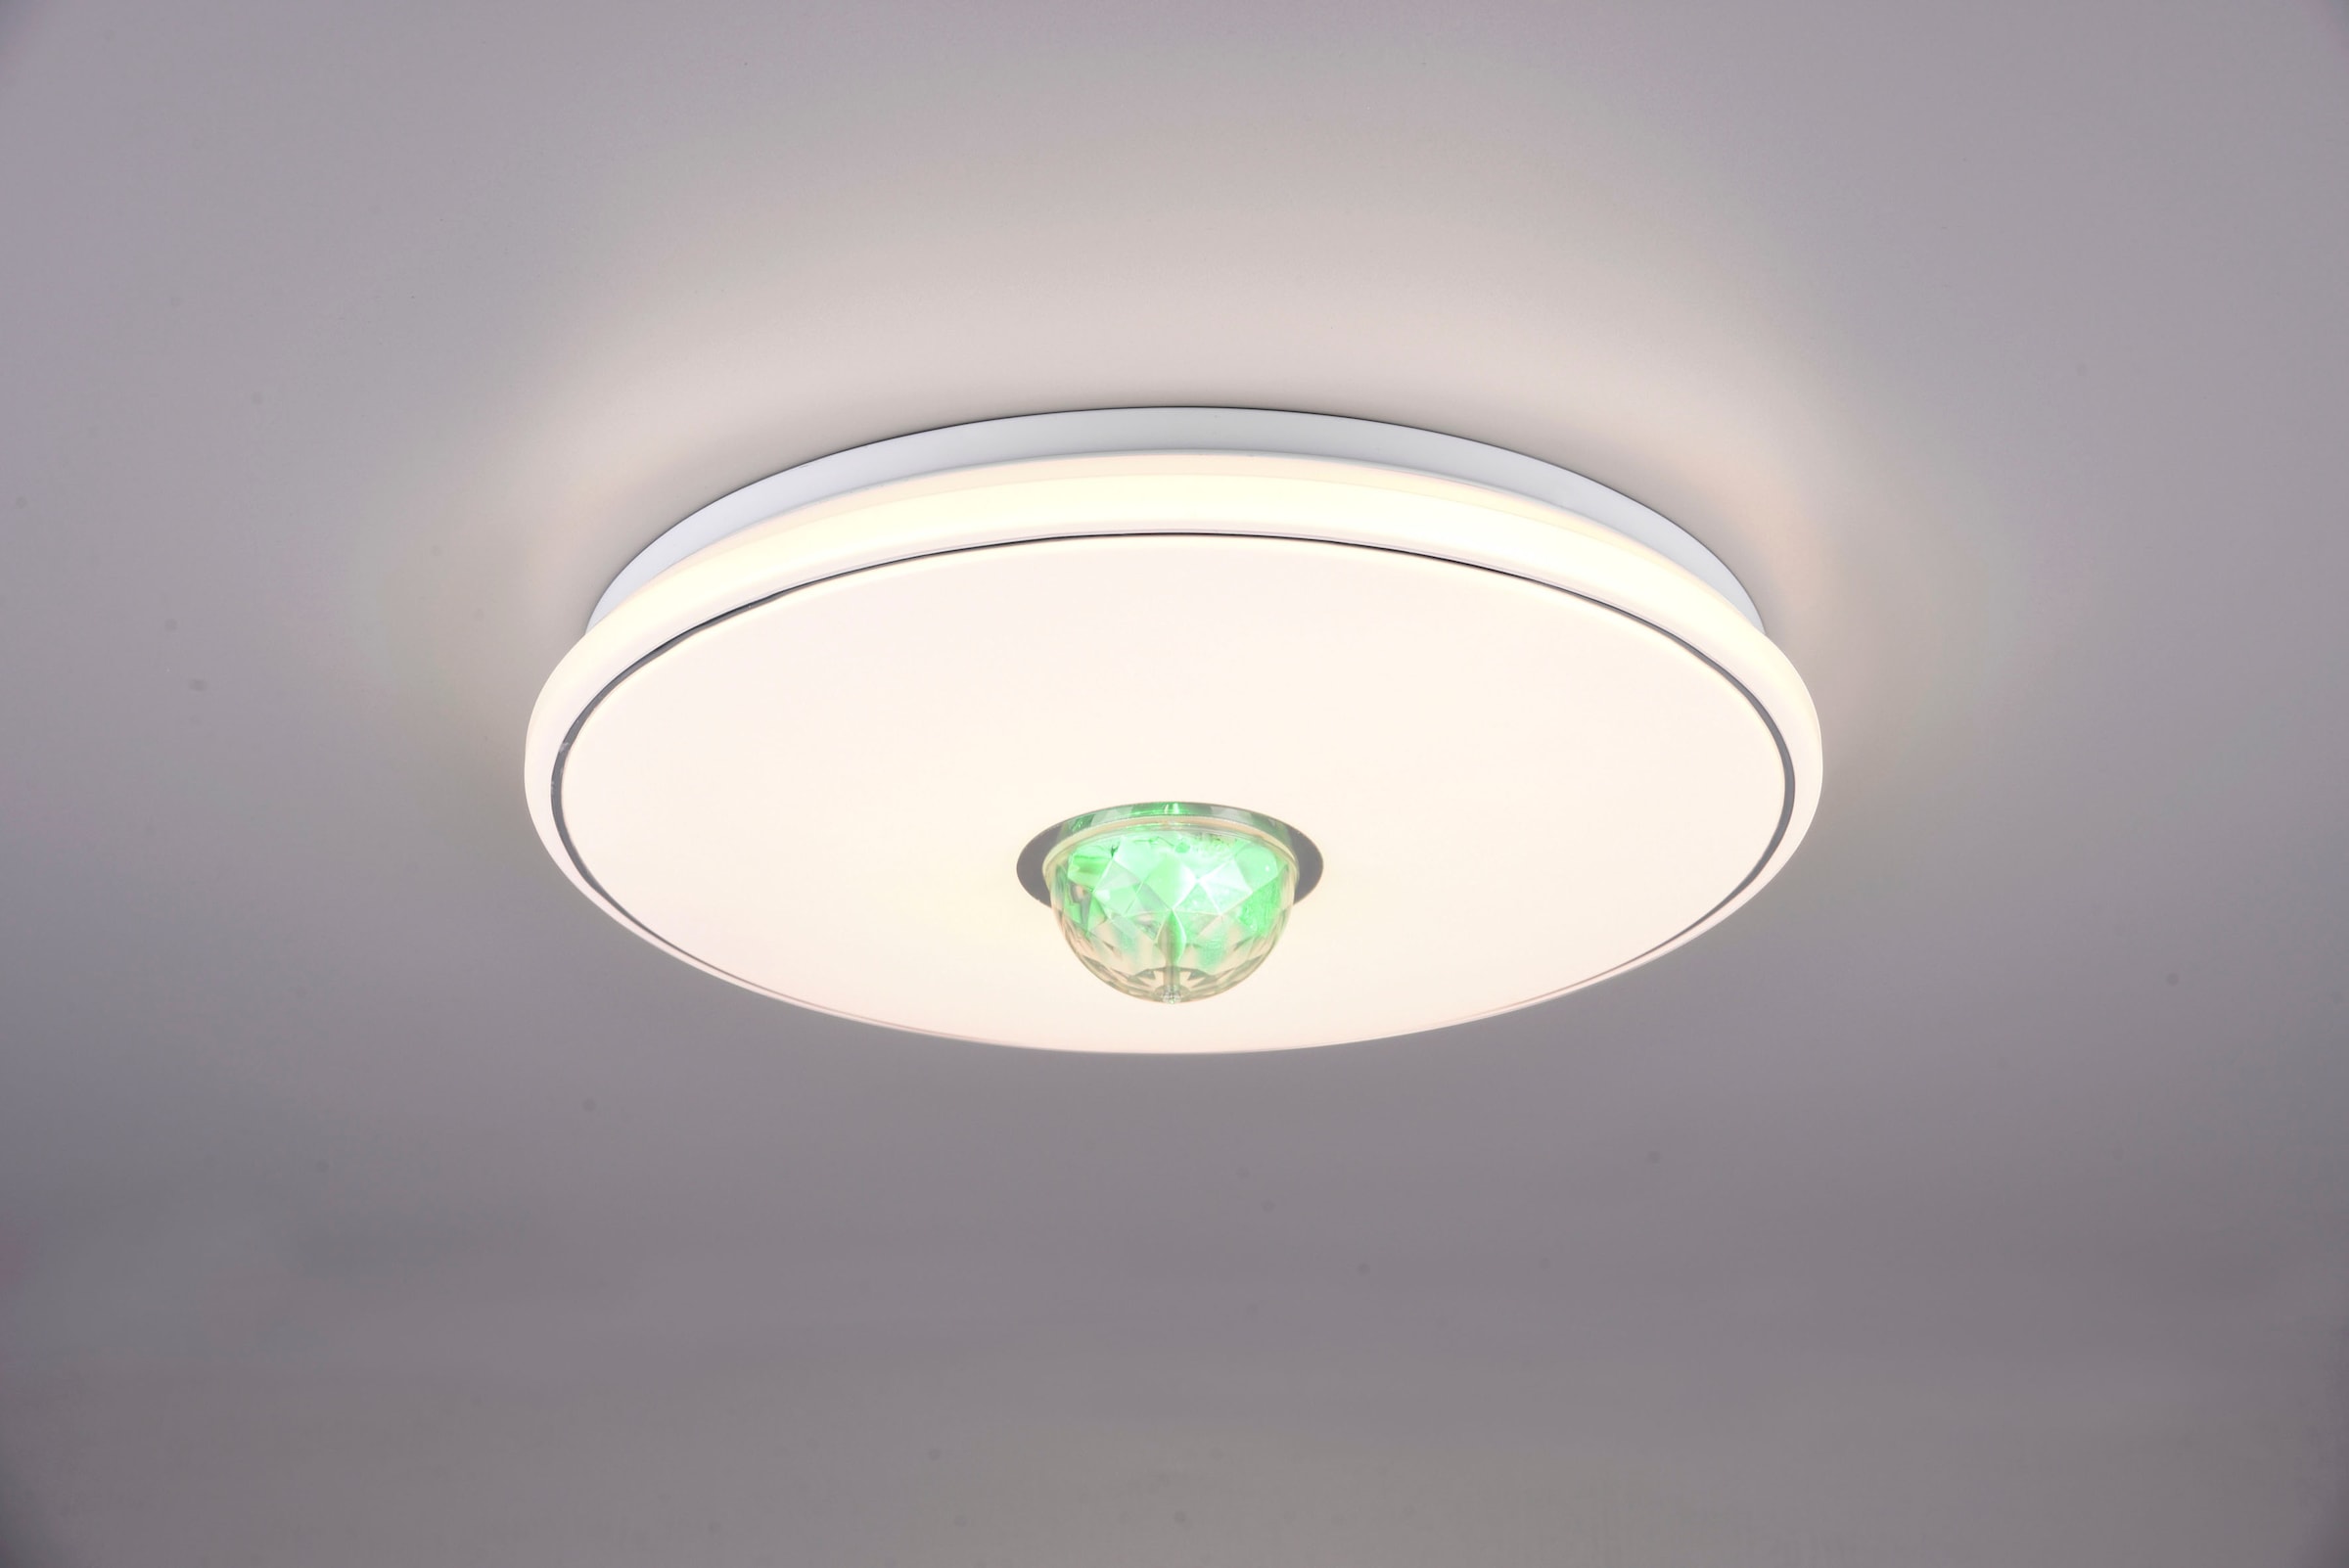 LED Maxi-Lichter mit Farbwechsel, 2 Stück online kaufen